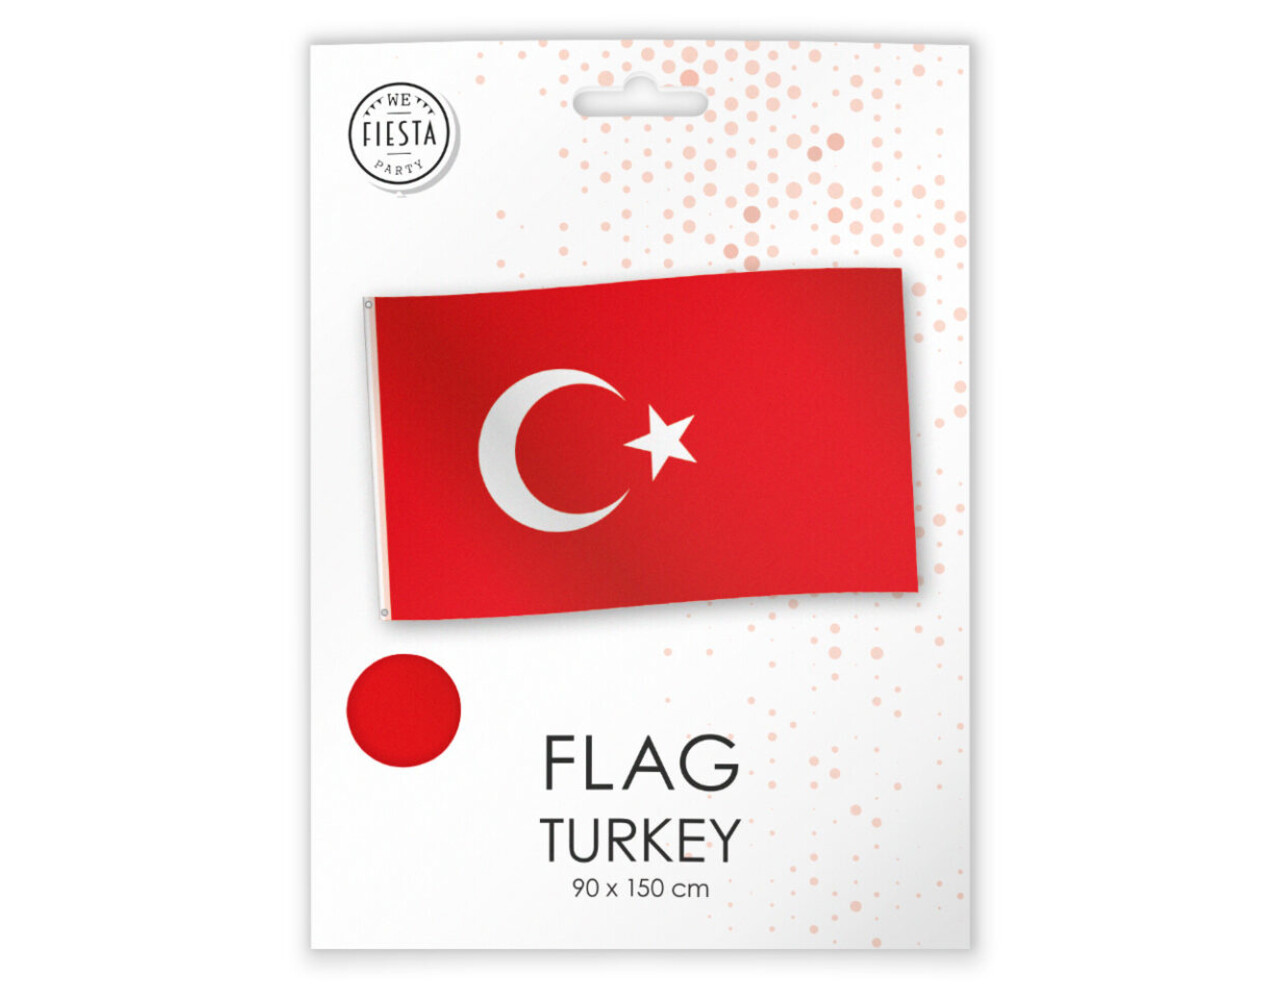 Flagge Türkei 150cm x 90cm - Partywinkel